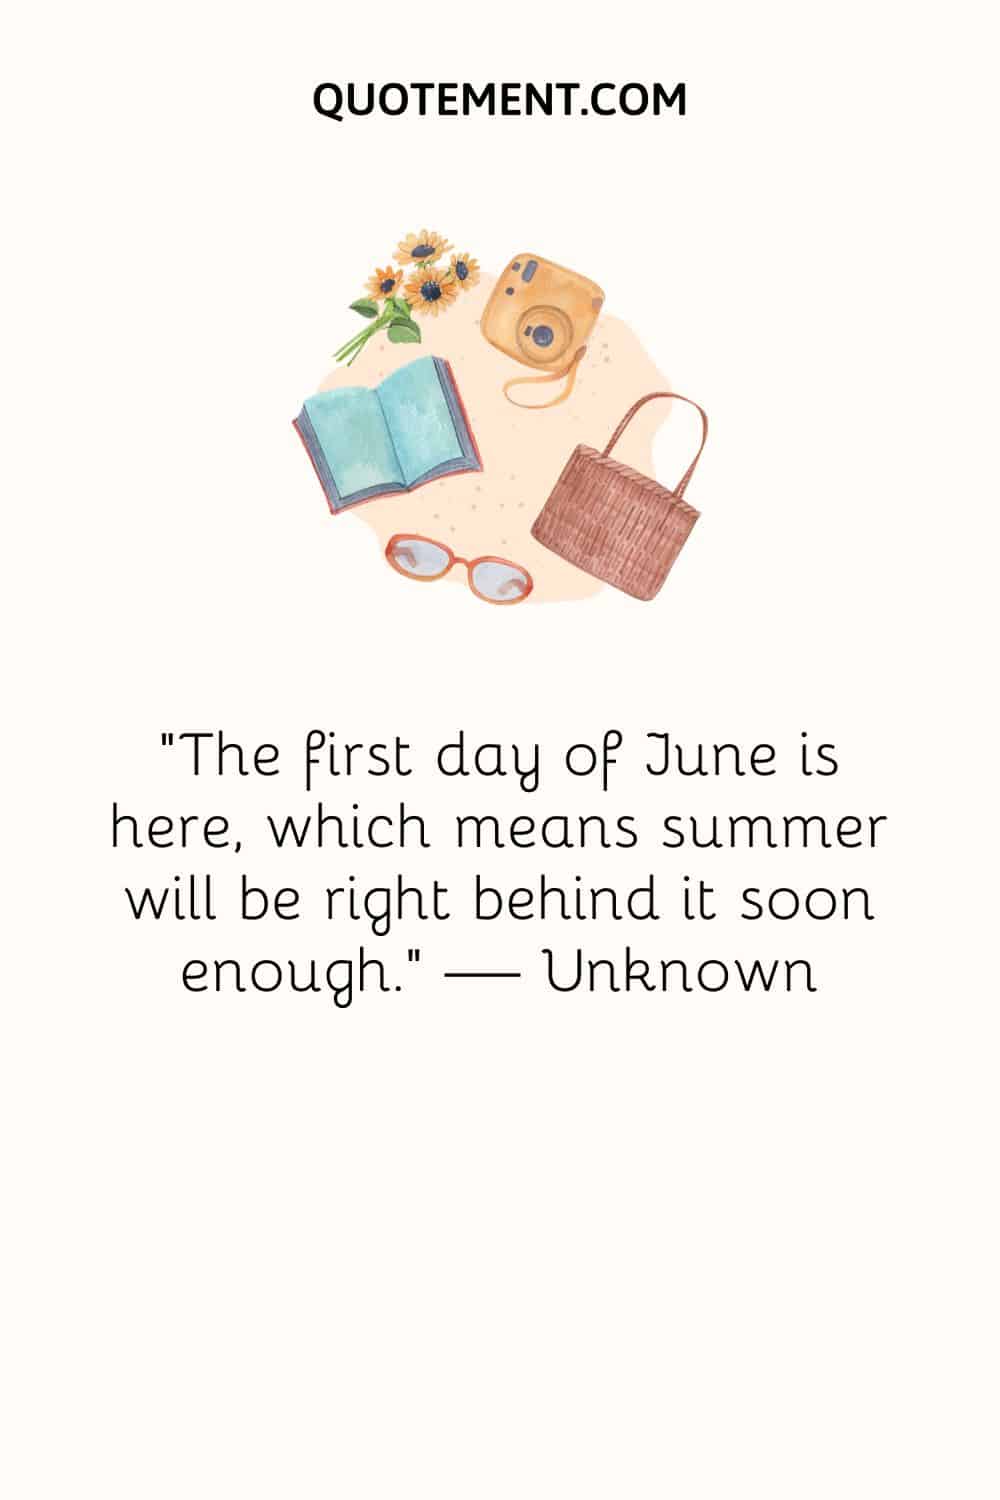 un libro, unas gafas, un bolso, una cámara y una imagen de flores que representan la cita positiva hello June